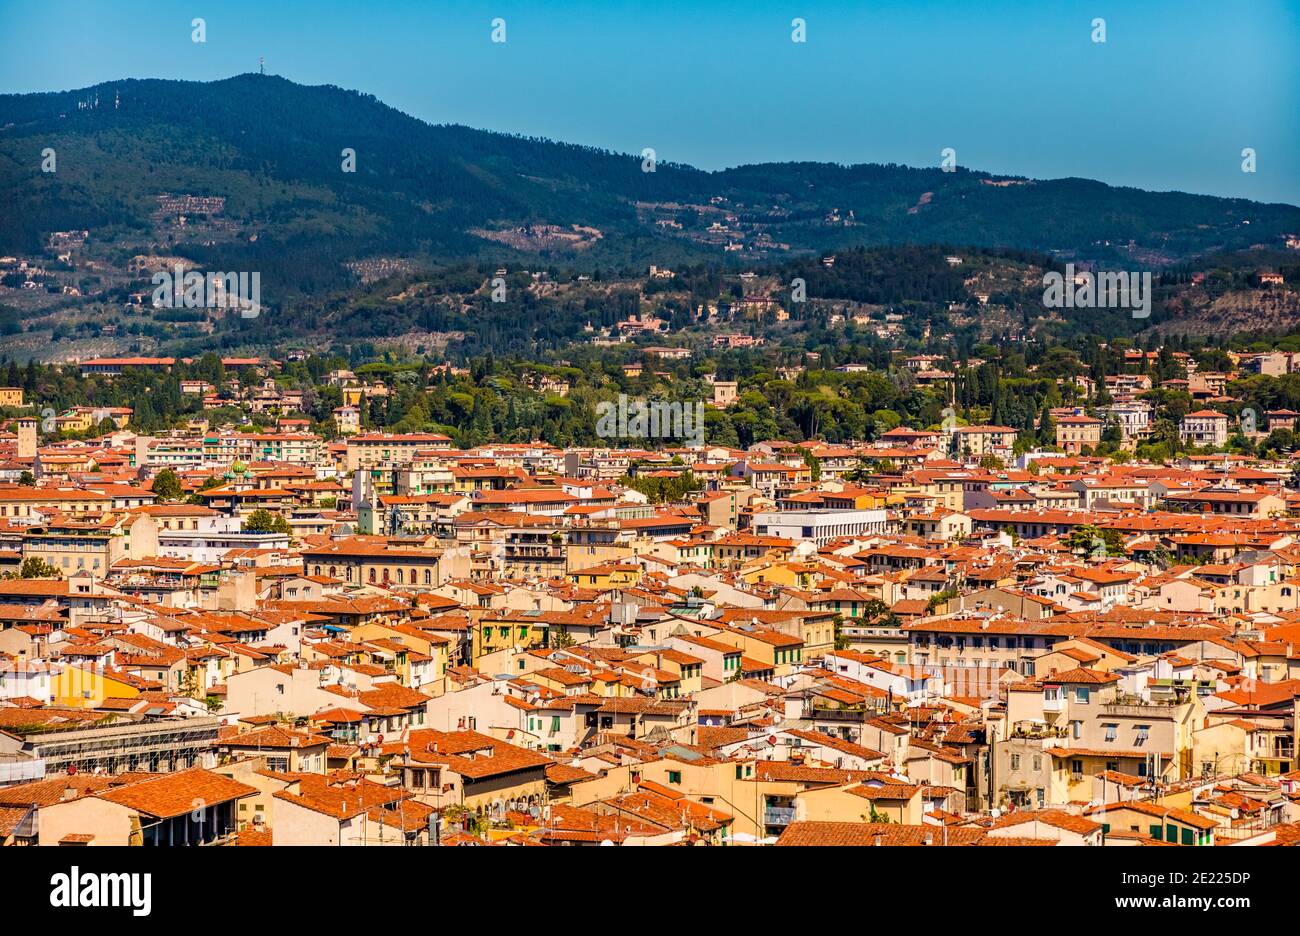 Bella vista panoramica aerea del centro storico di Firenze circondato dalle colline fiorentine, piantate di ulivi e vigneti, e dal... Foto Stock